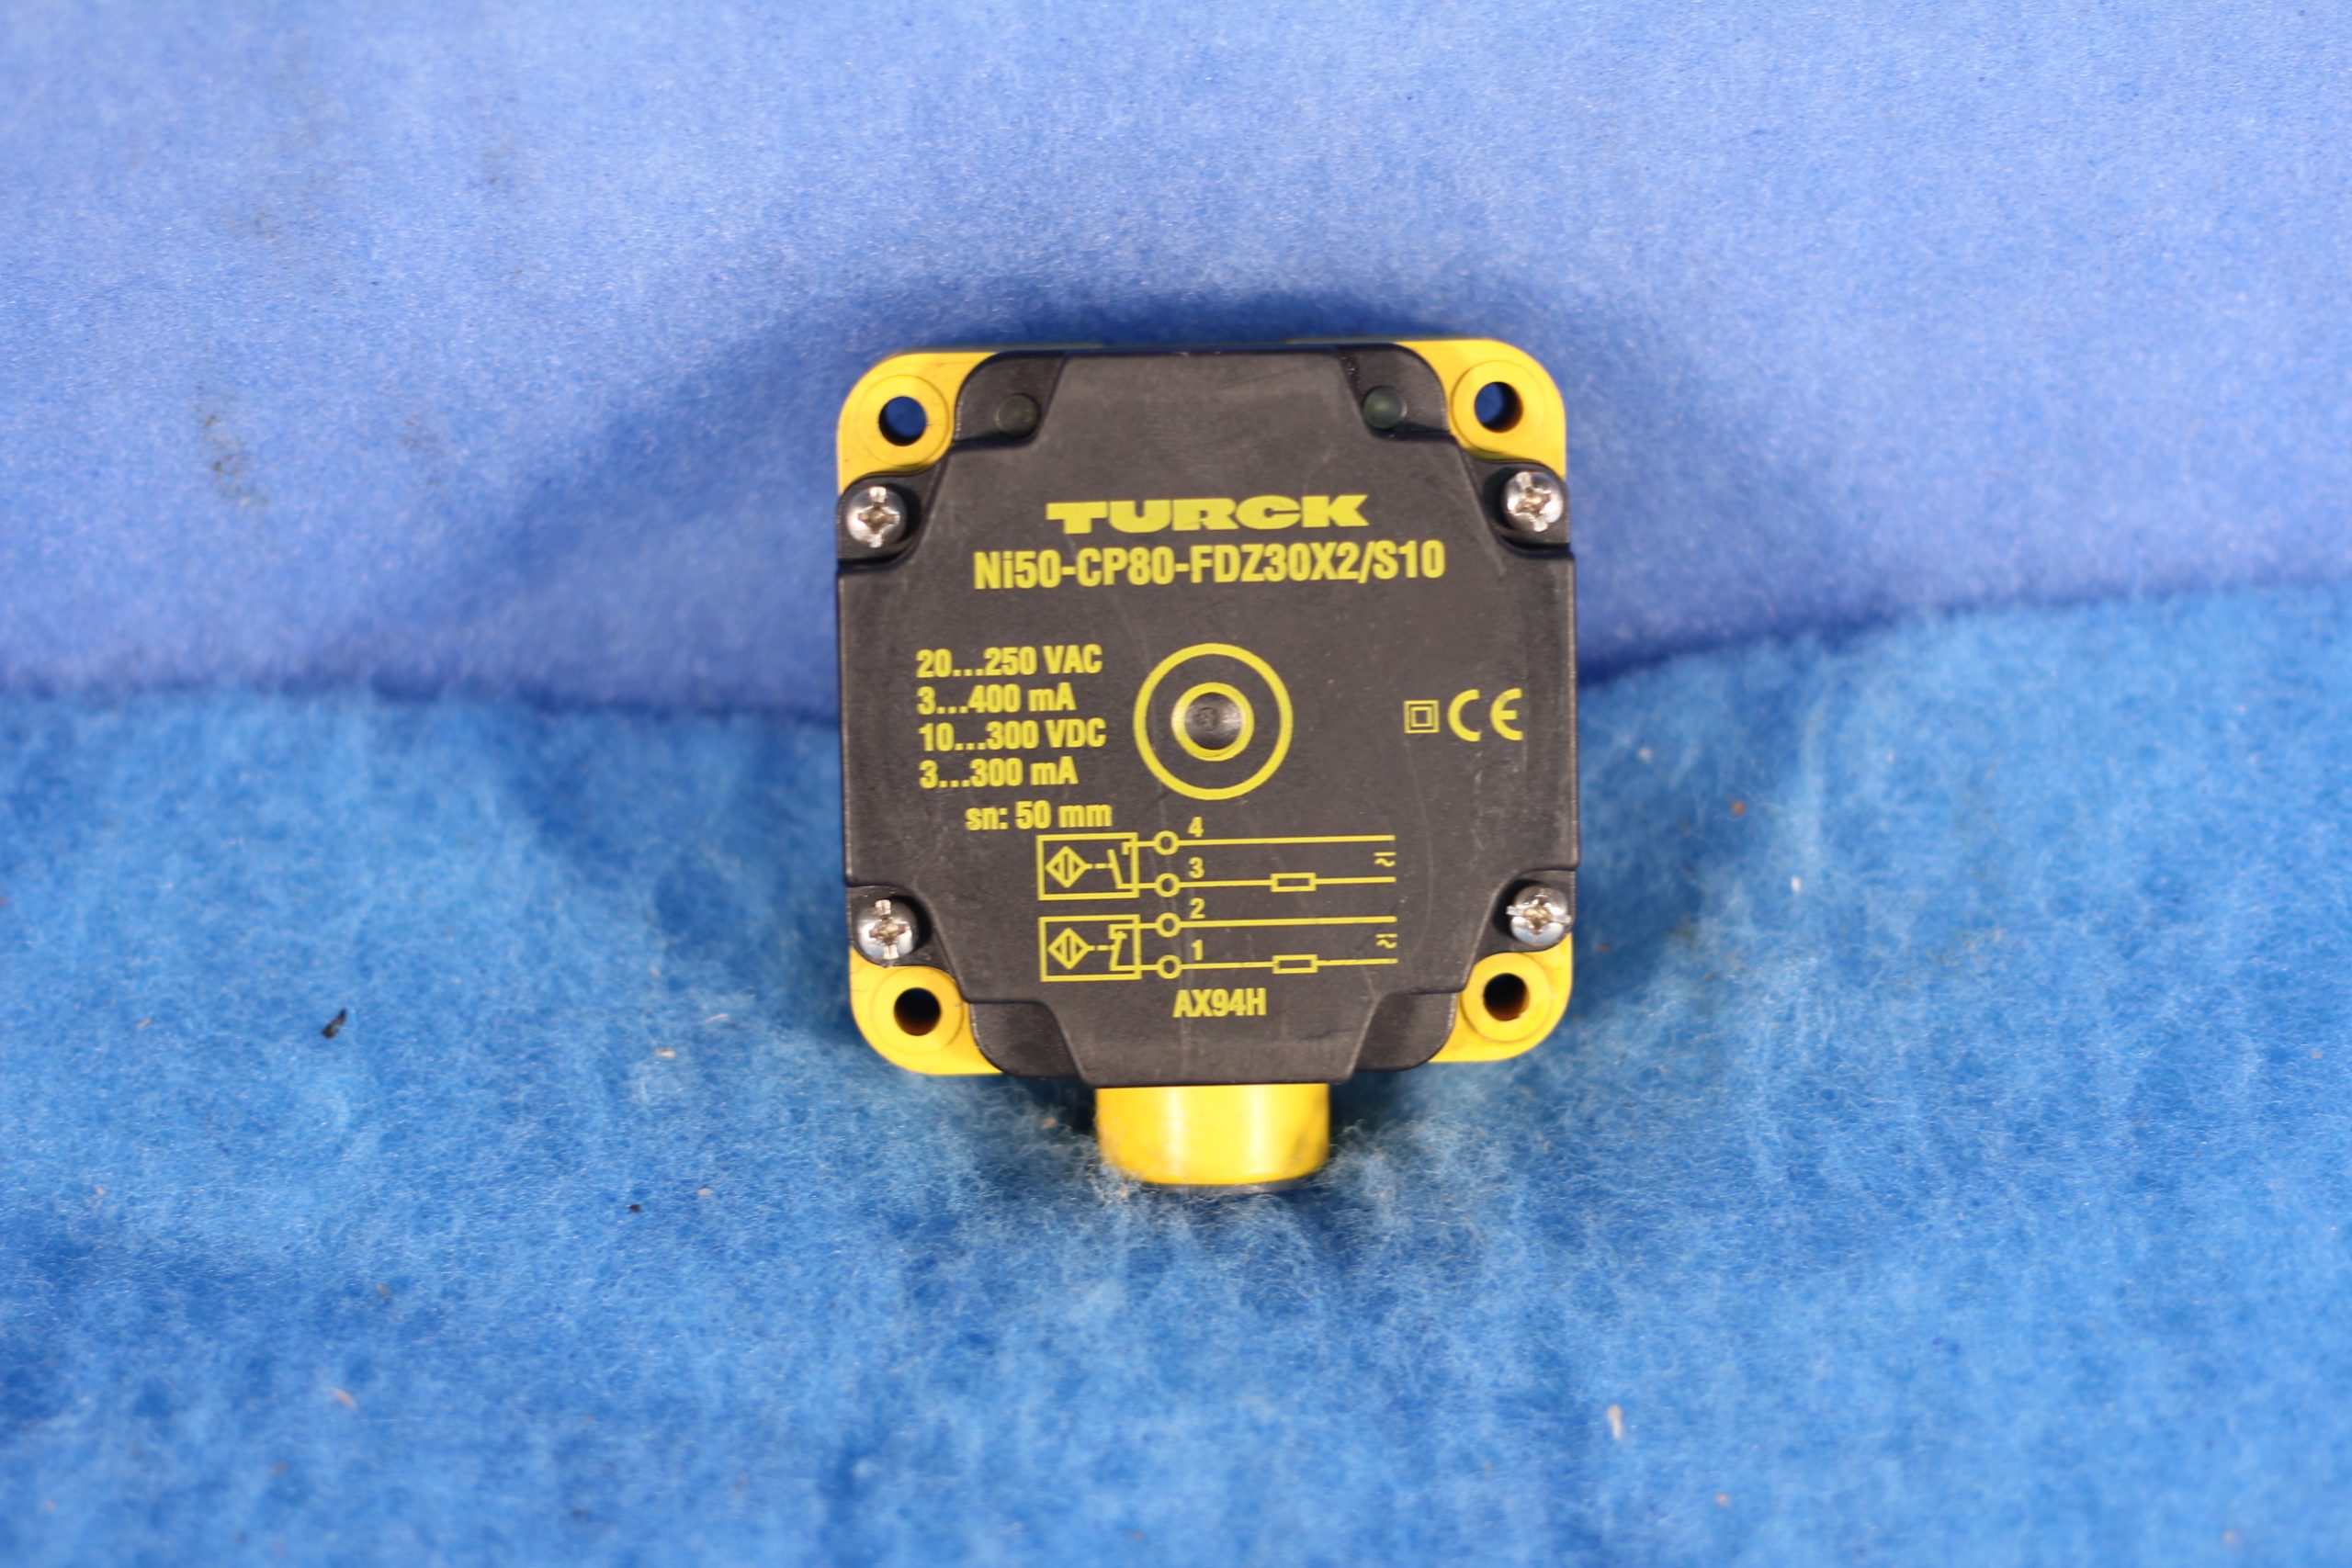 Ohio Semitronics Transducer PC5-117X5 0-150V 0-20A 1Ph 